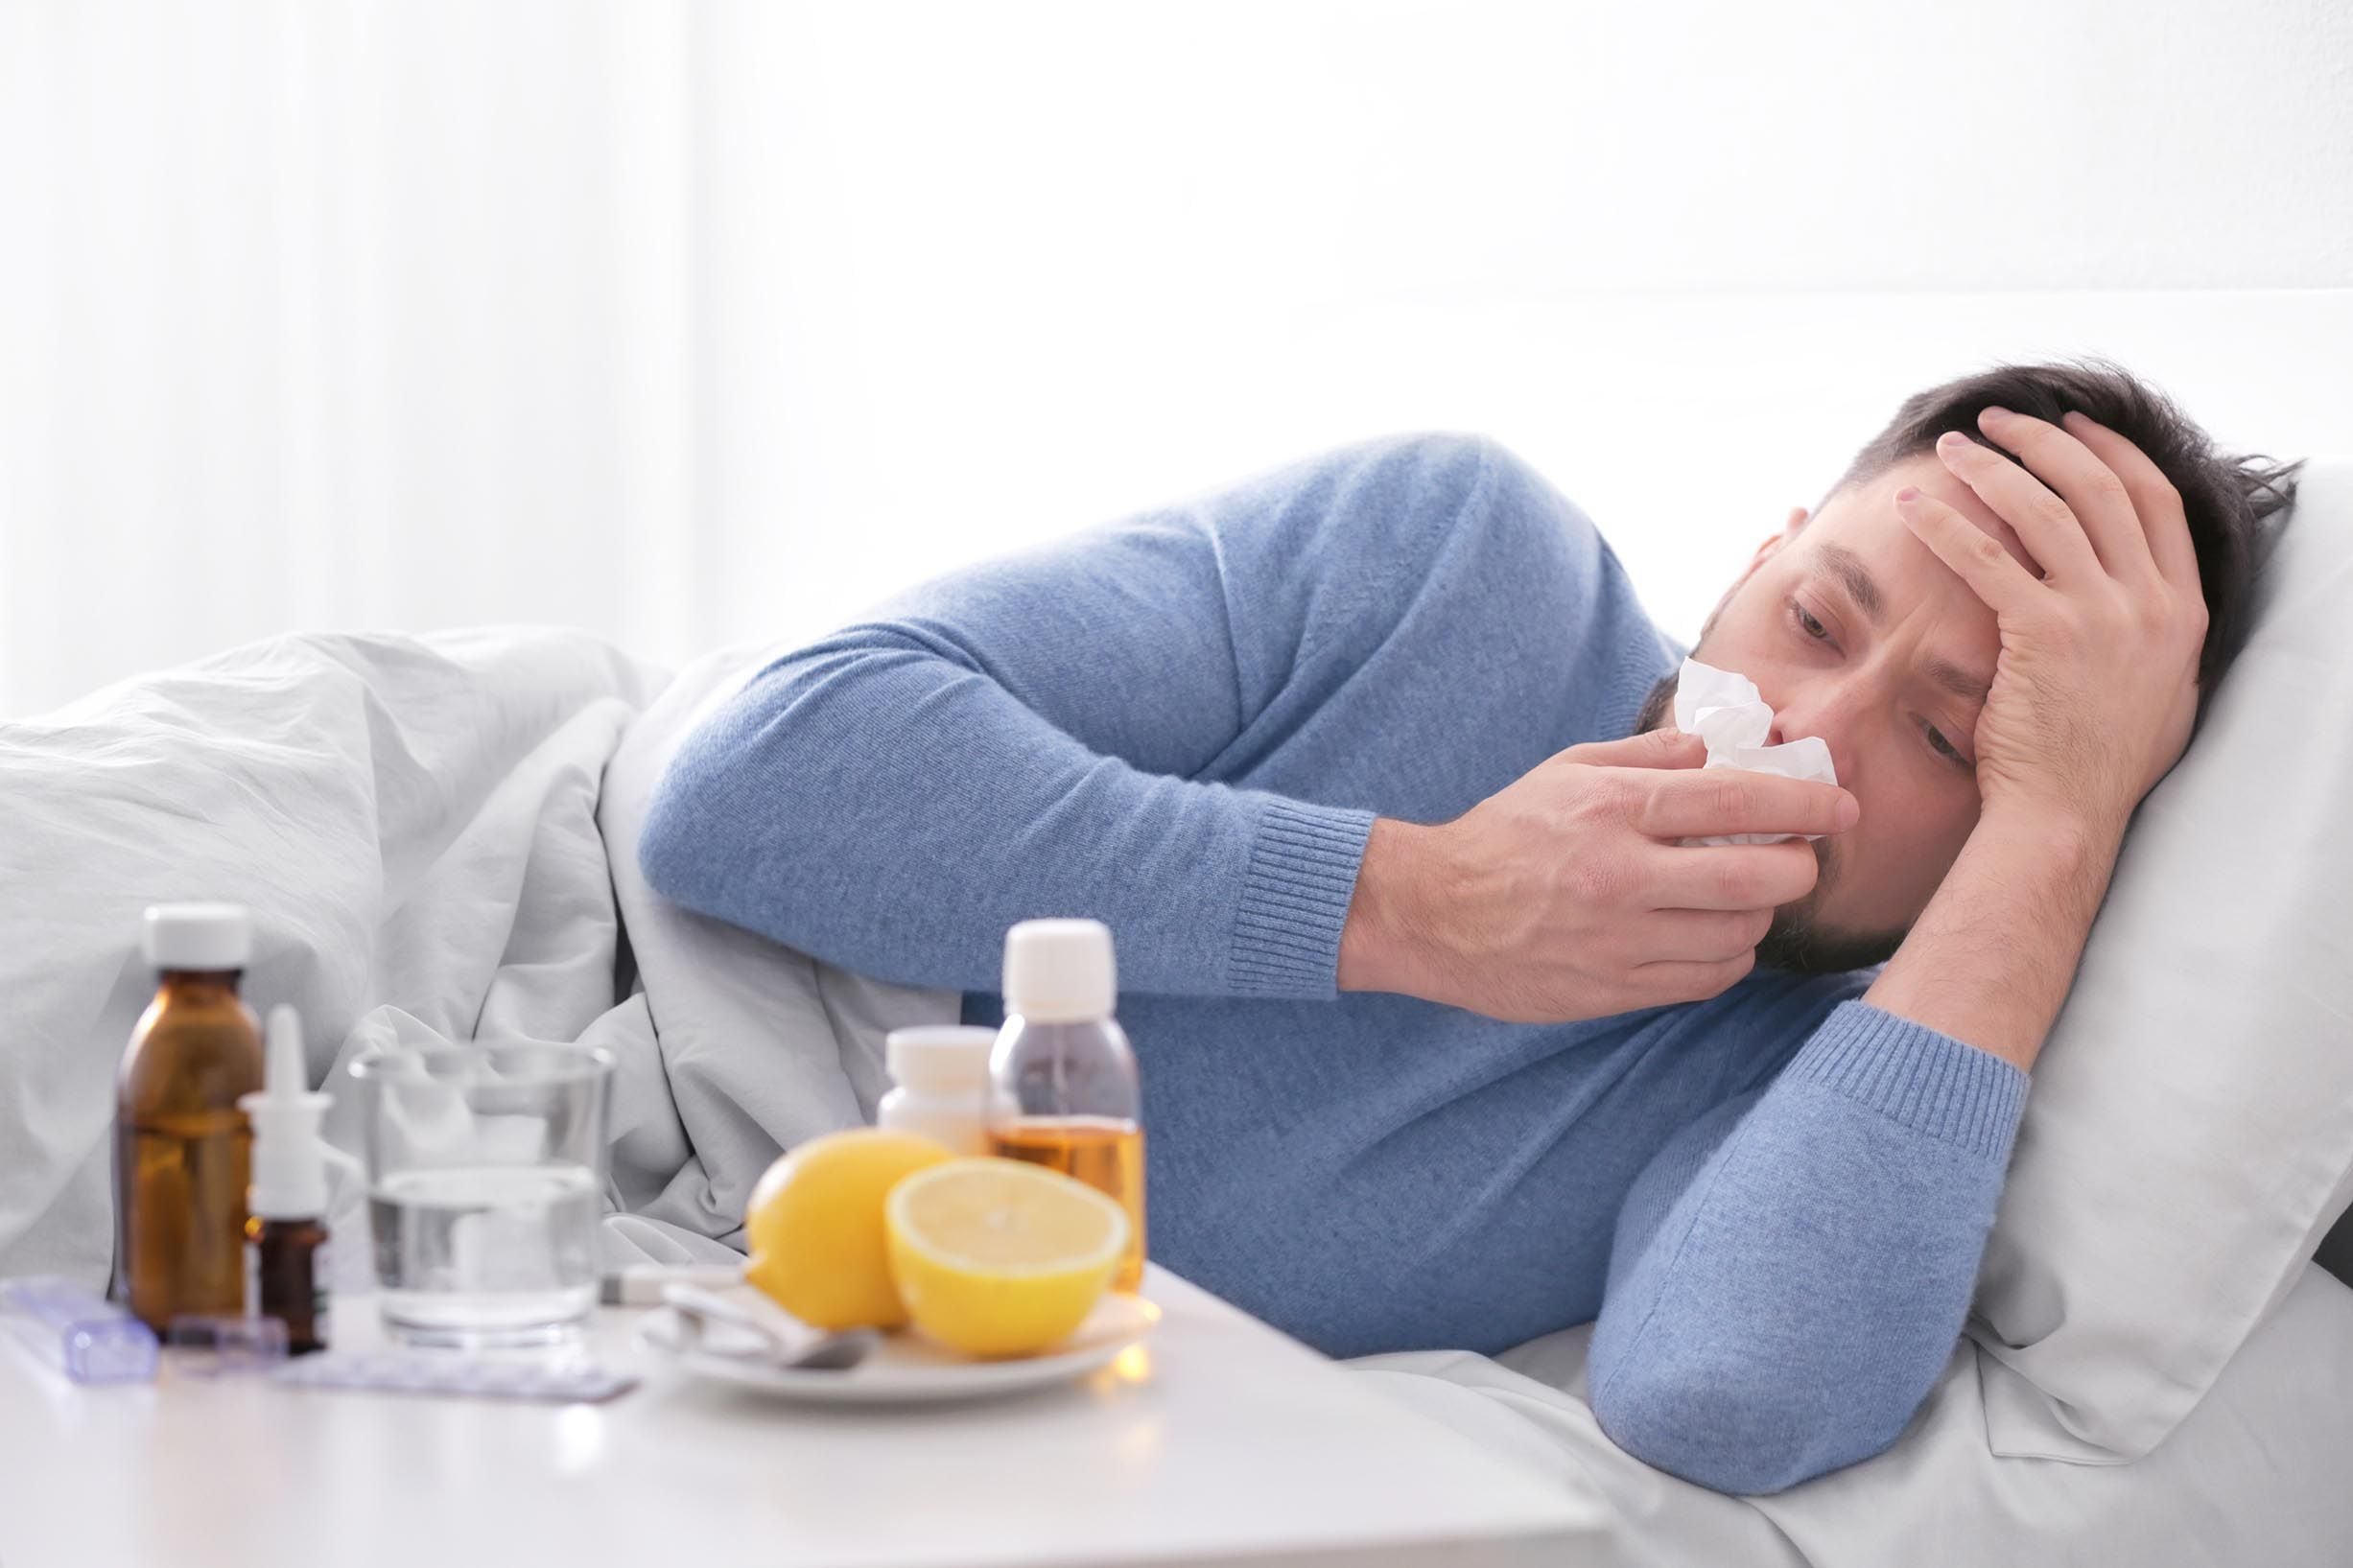 La influenza es un virus respiratorio tiene como síntomas tos, fatiga, debilidad, estornudos y fiebre, entre otros.